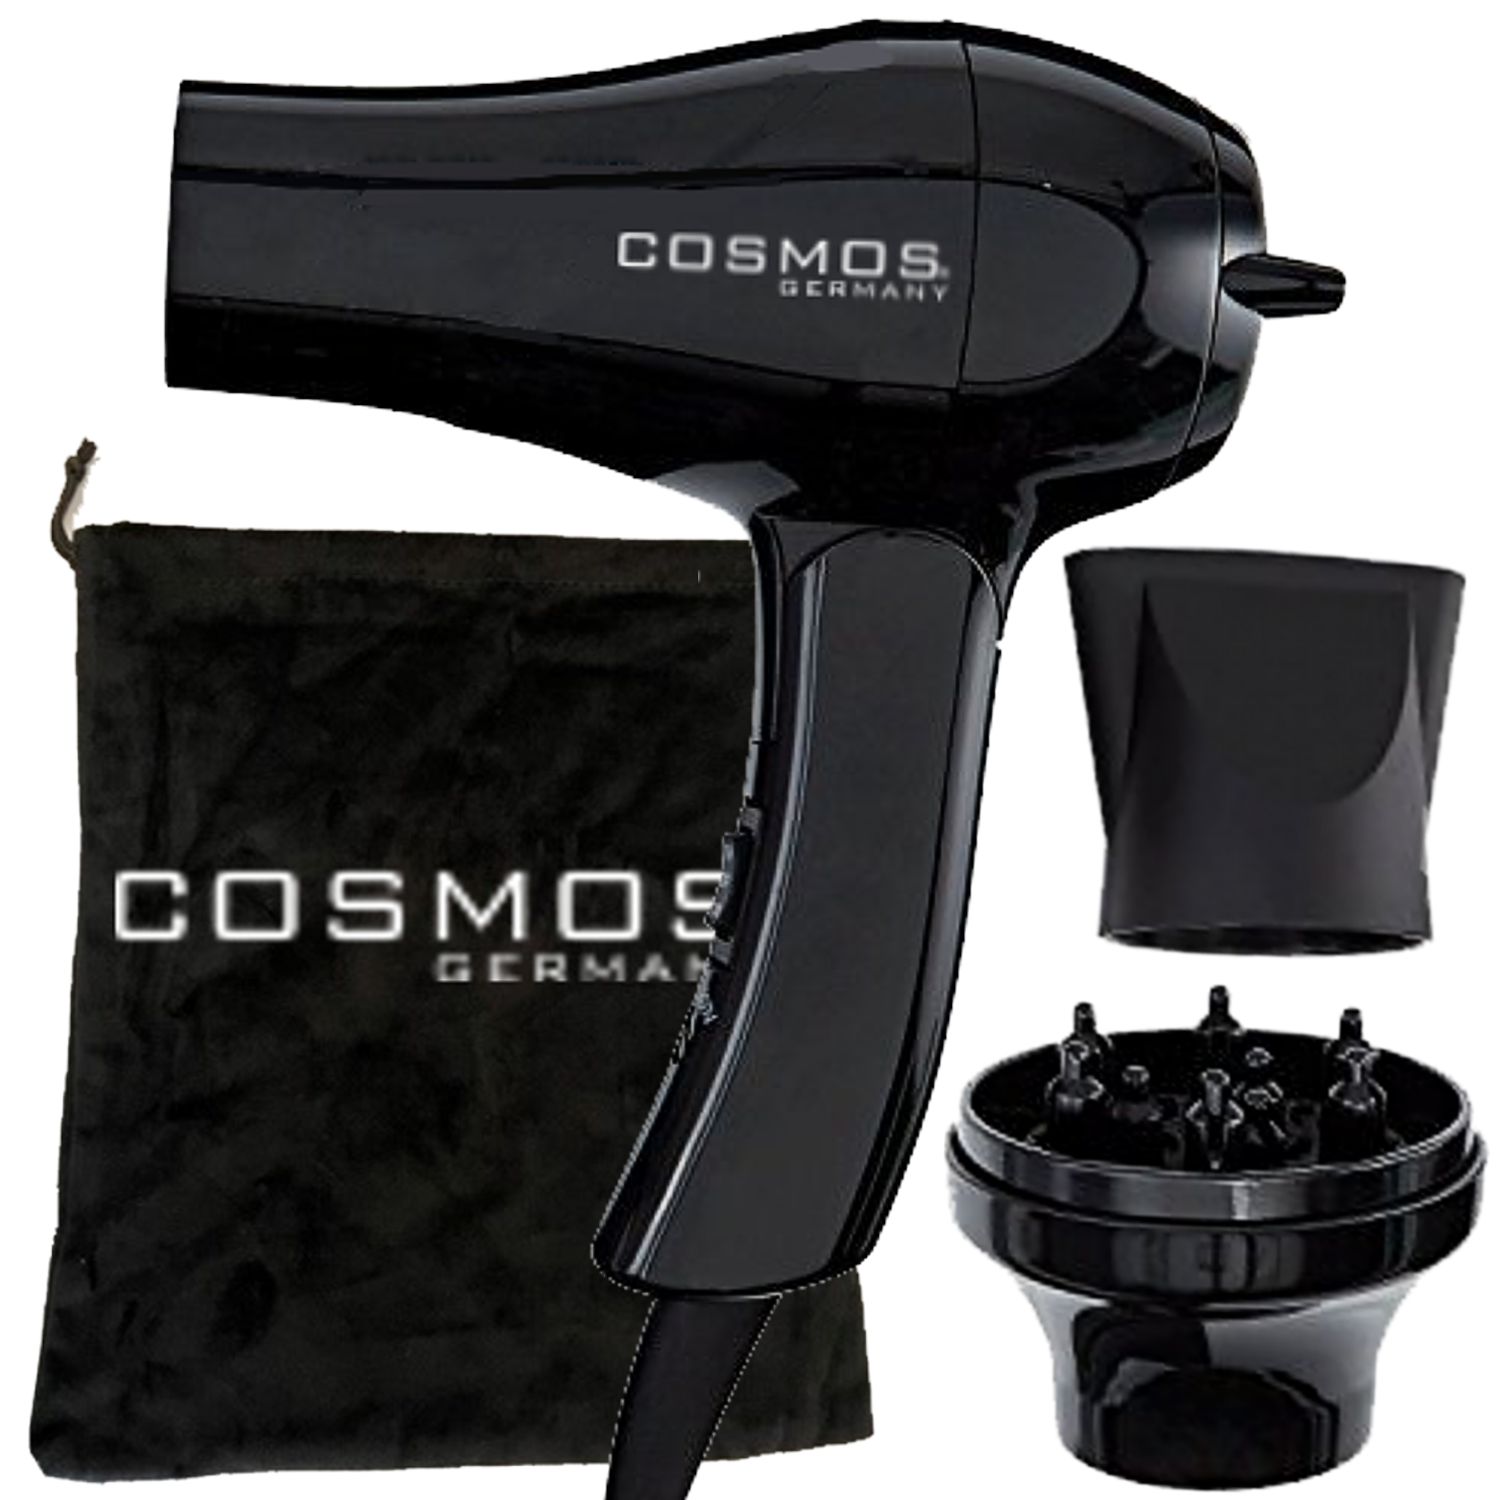 Cosmos MINI Hairdryer